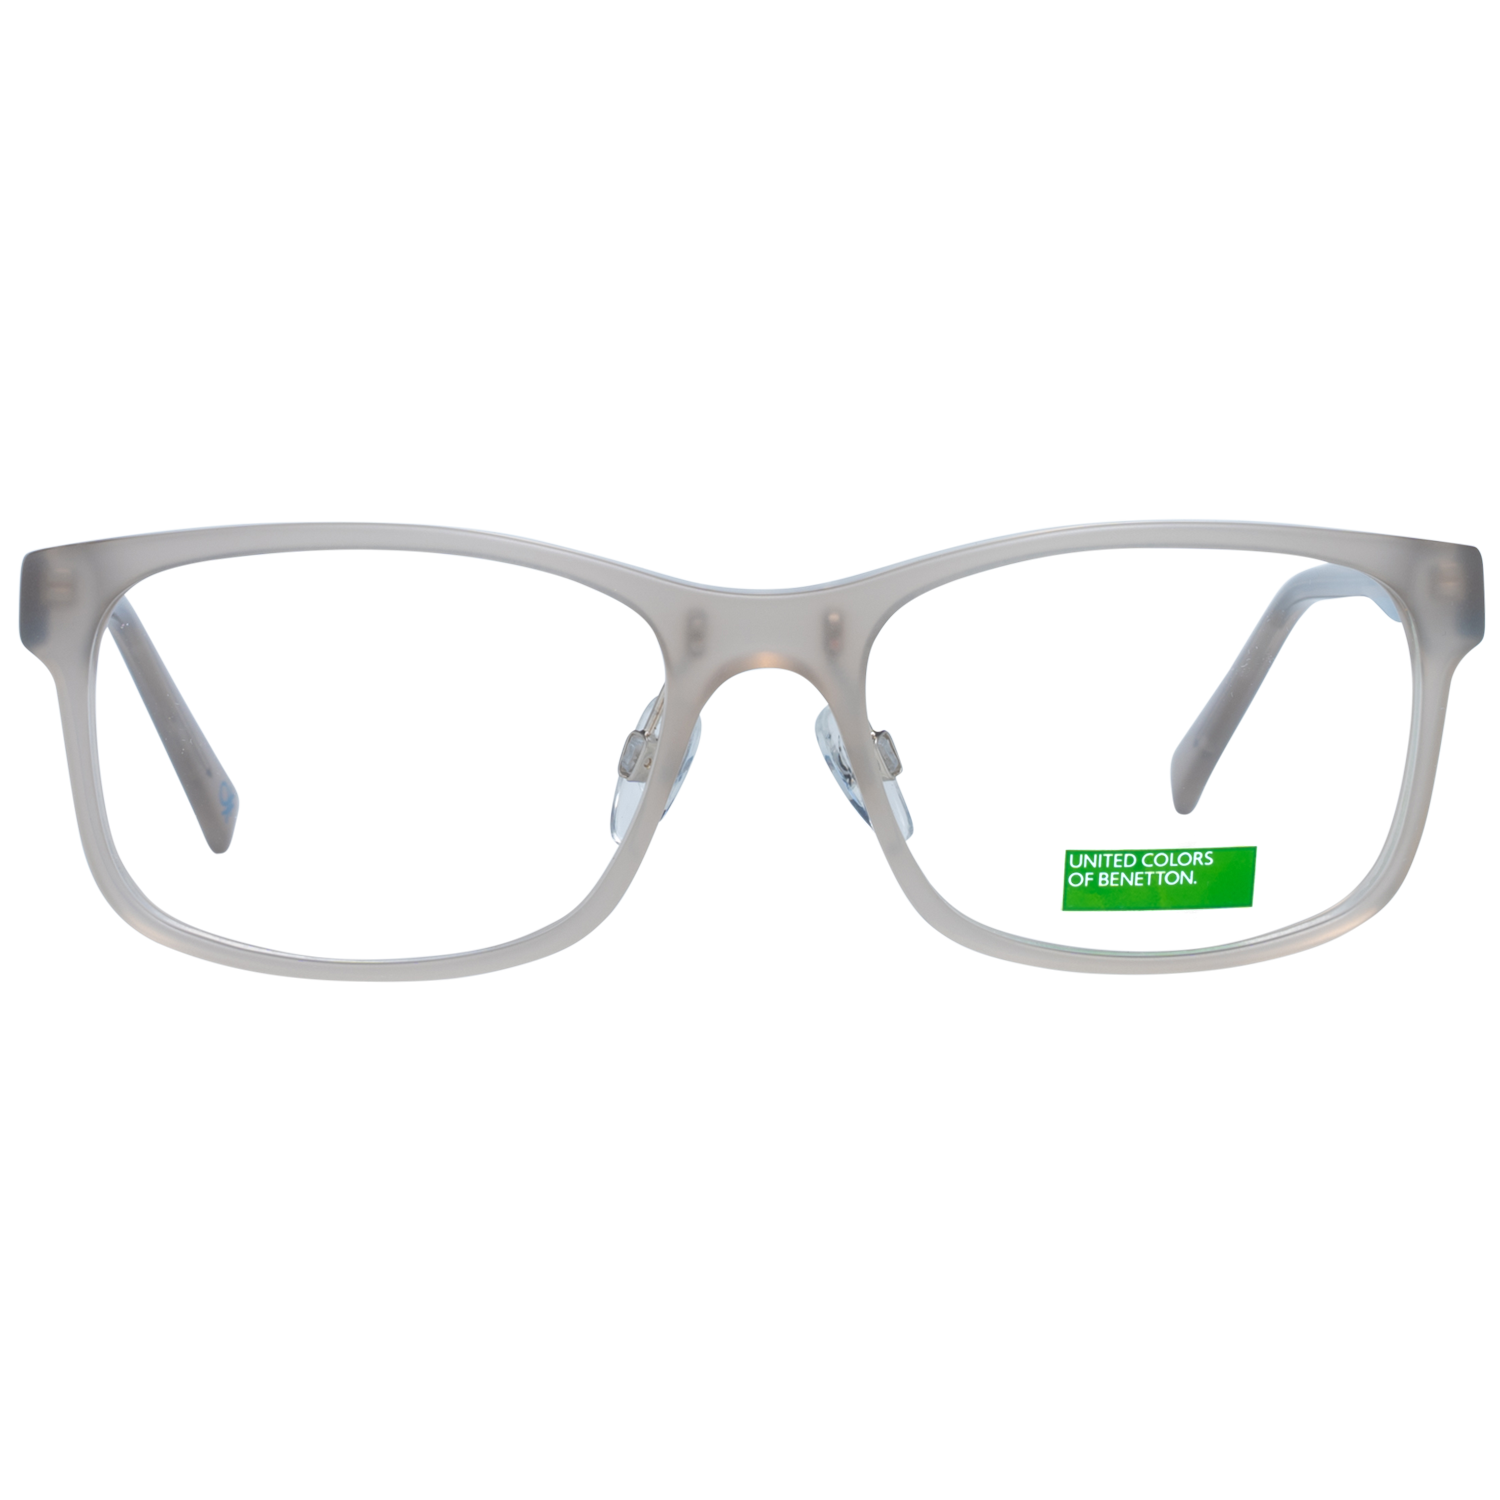 Benetton Frames Benetton Glasses Frames BEO1041 917 54 Eyeglasses Eyewear UK USA Australia 